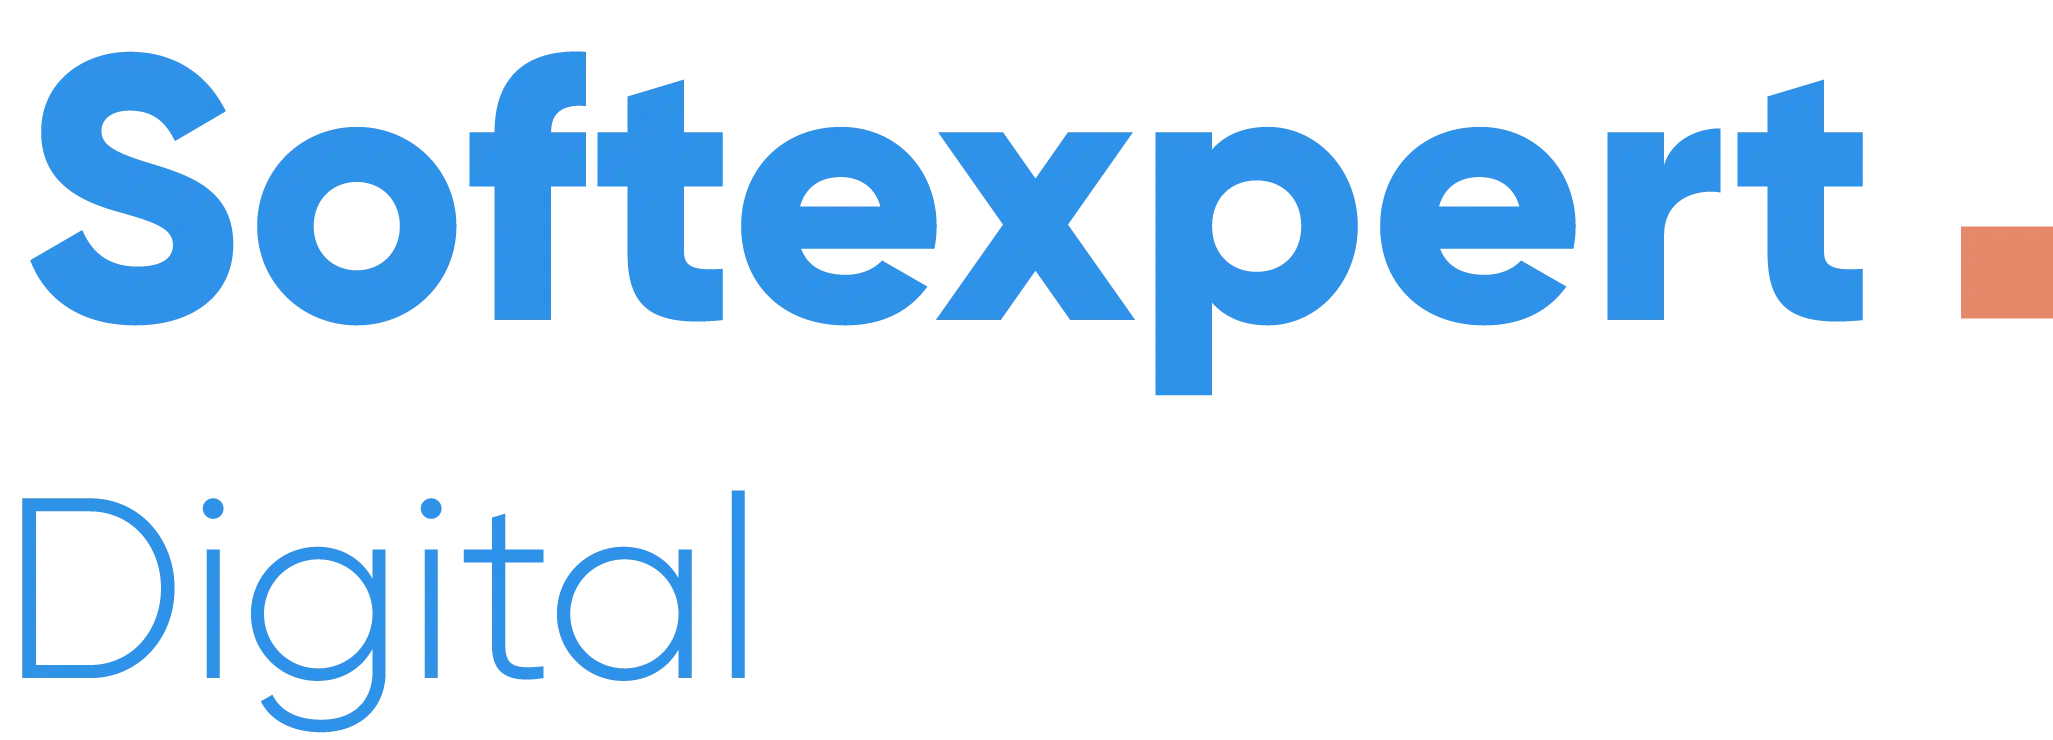 softexpert-logo